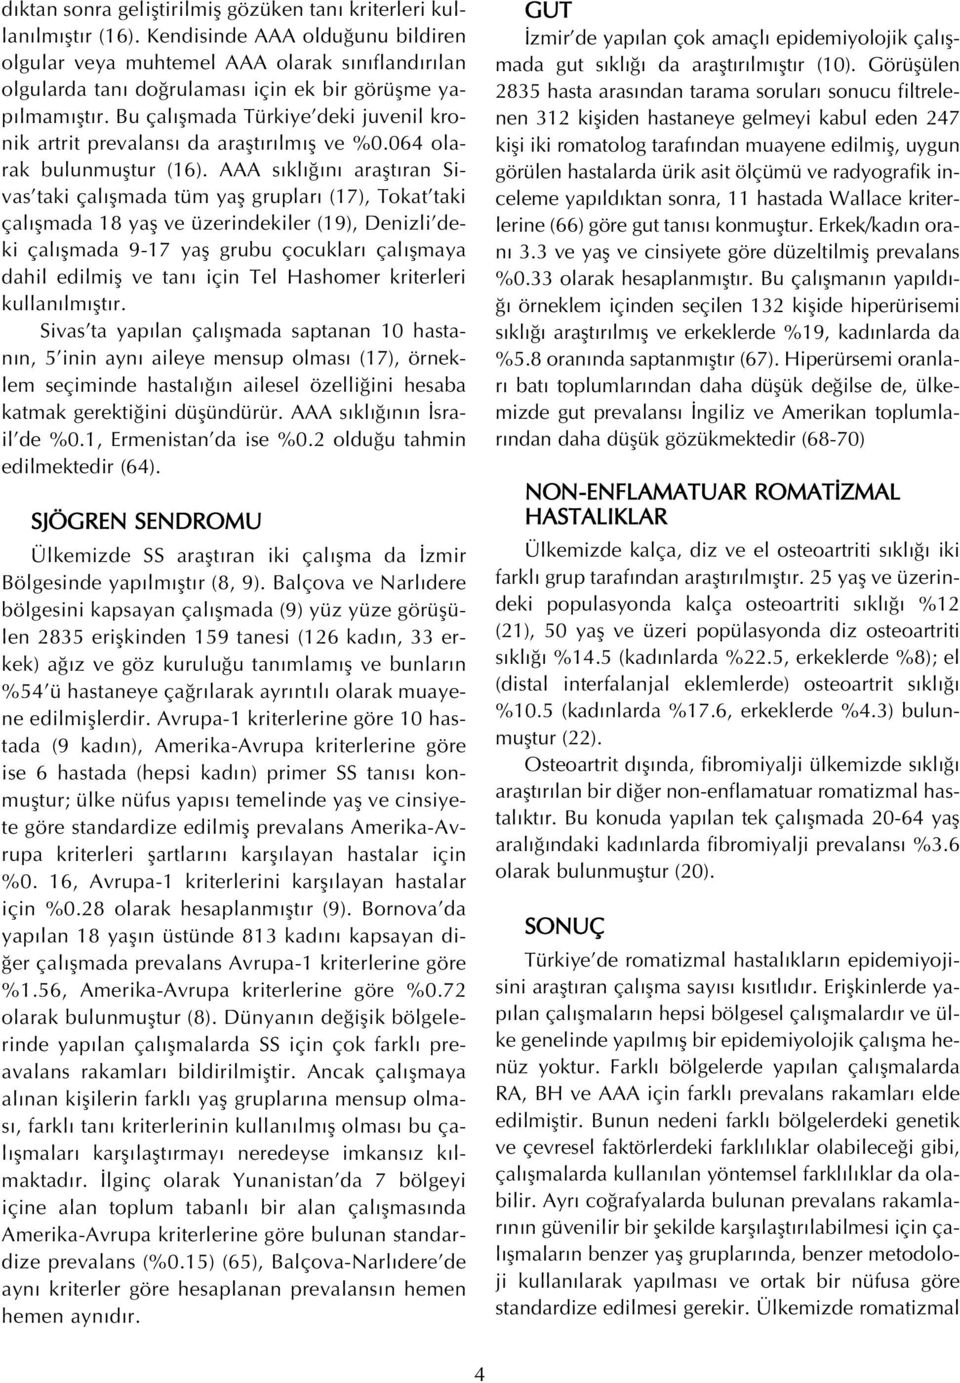 Bu çal flmada Türkiye deki juvenil kronik artrit prevalans da araflt r lm fl ve %0.064 olarak bulunmufltur (16).